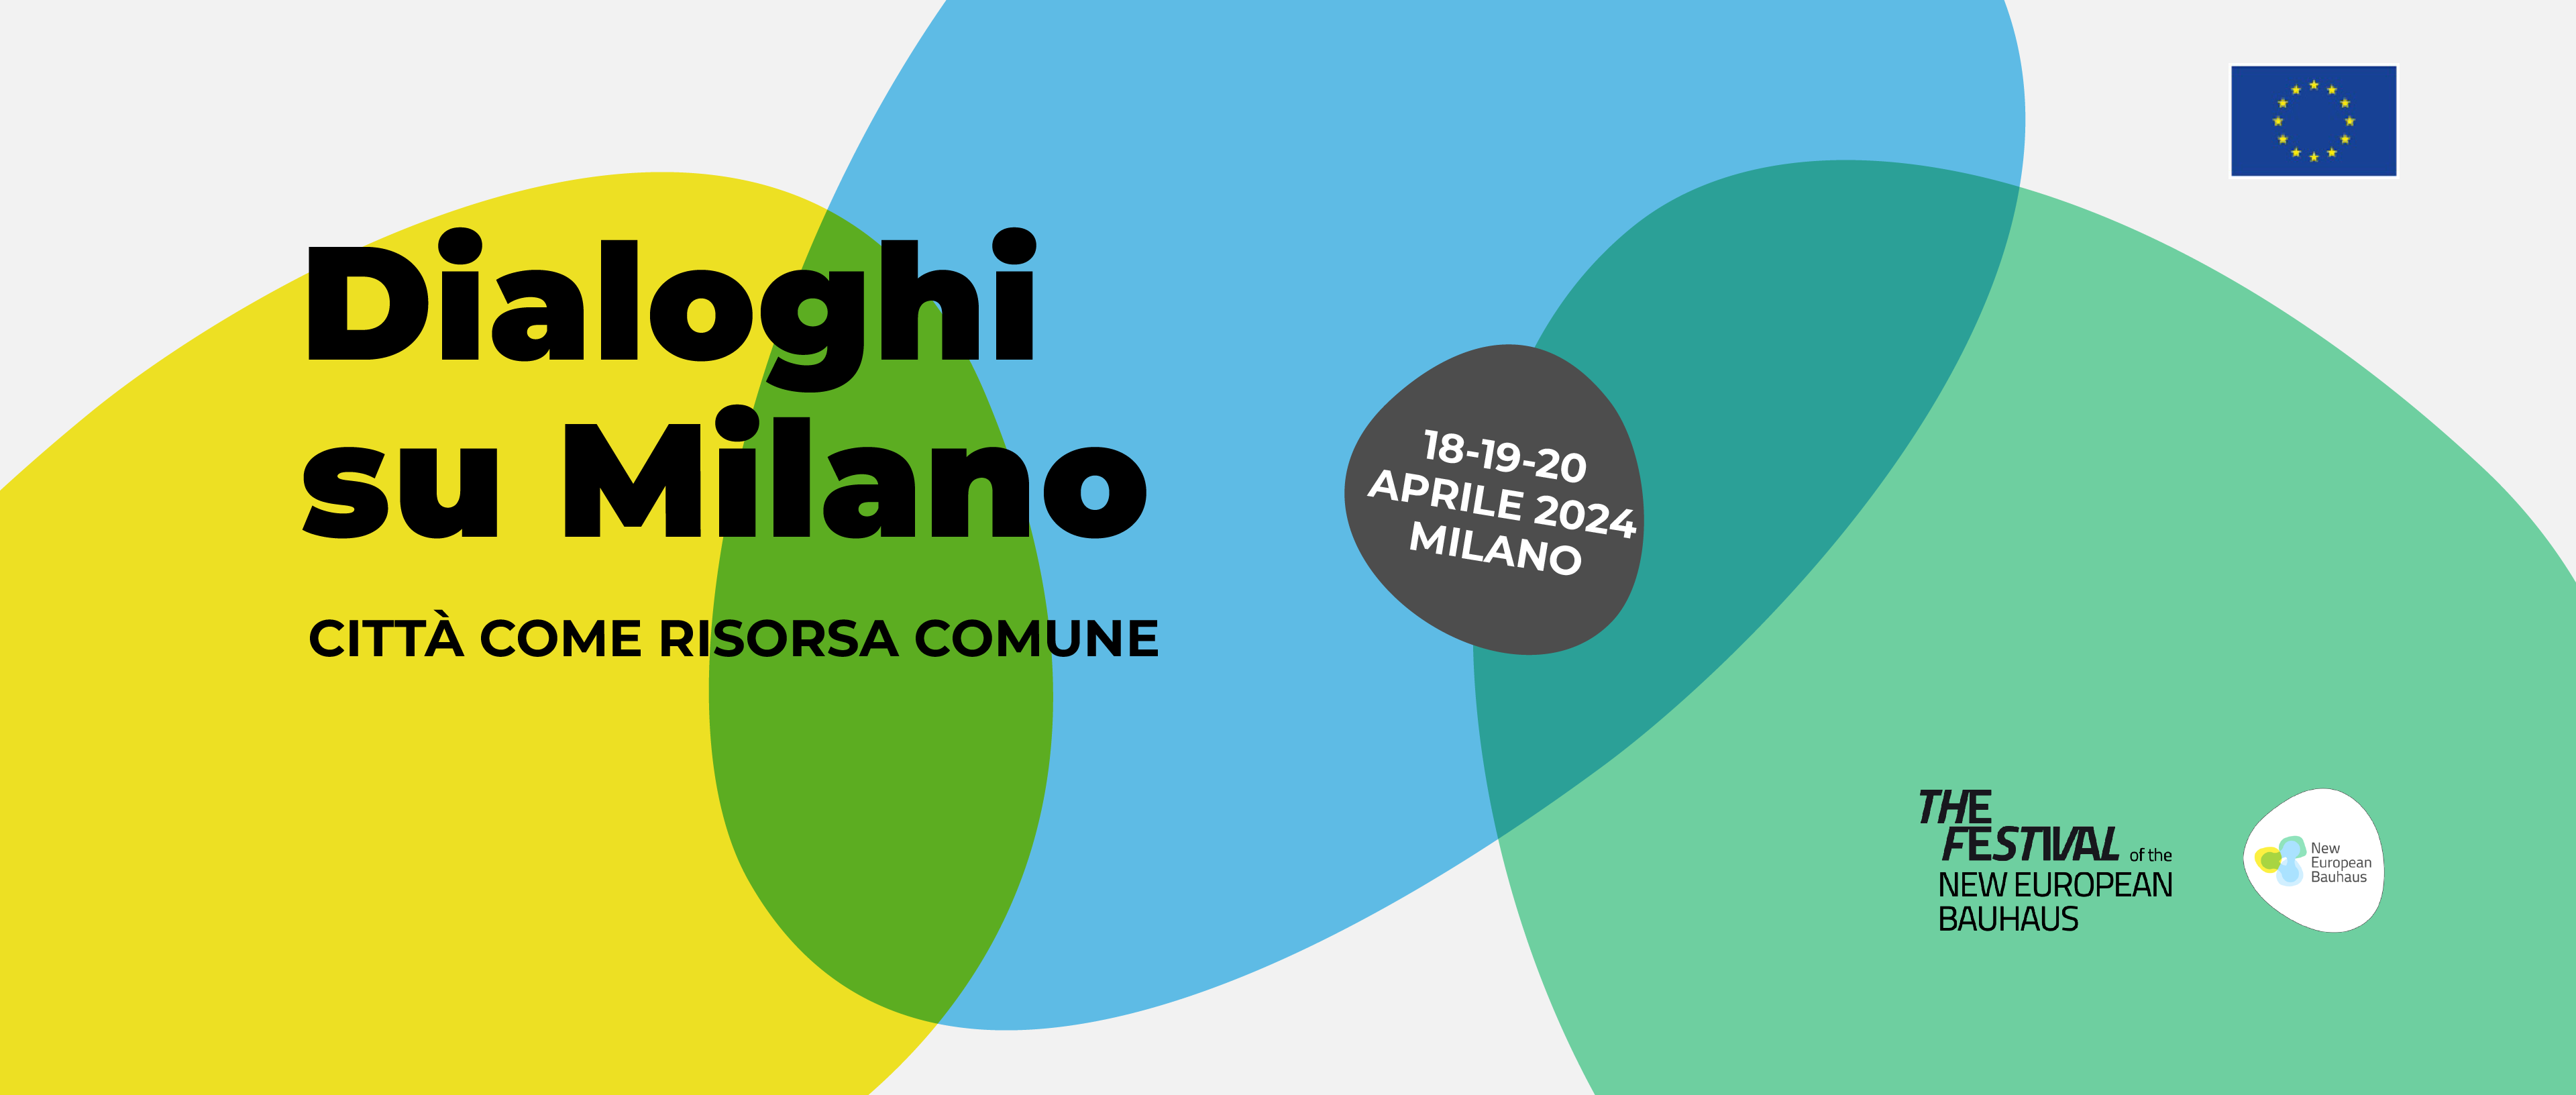 Dialoghi su Milano 18-20 aprile 2024